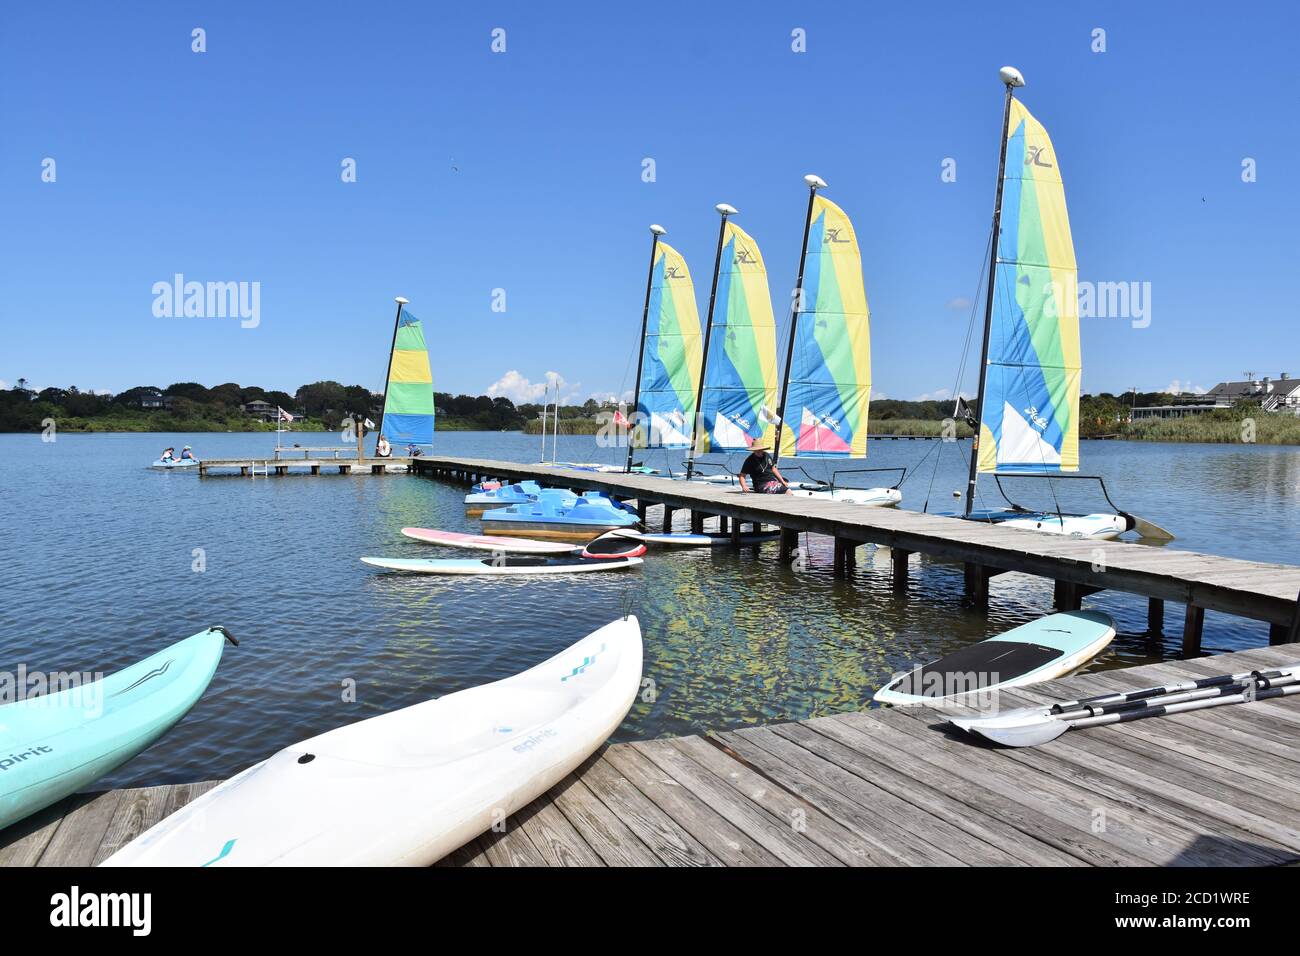 Kayaks, Paddleboards and sailboats at the lake Stock Photo